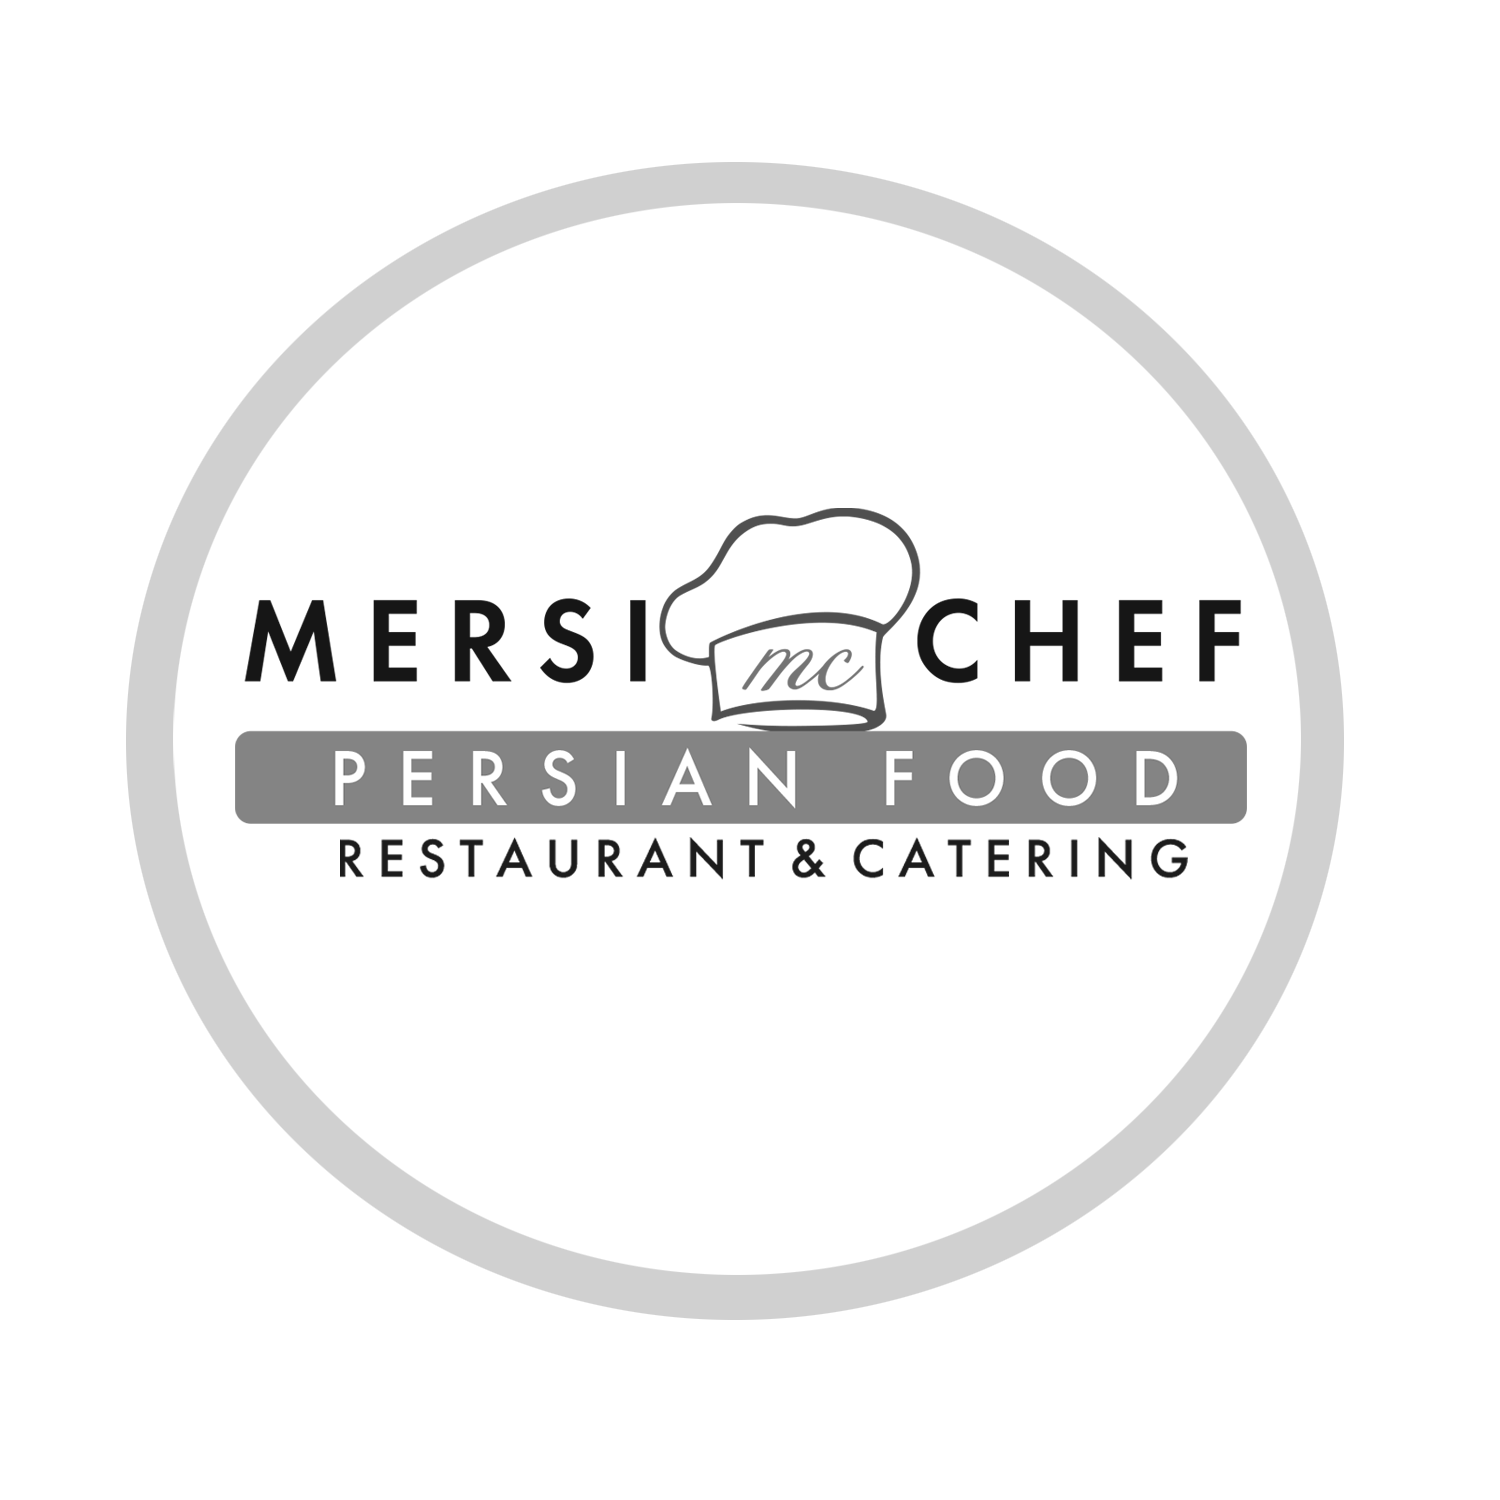 MERSI CHEF PERSIAN FOOD